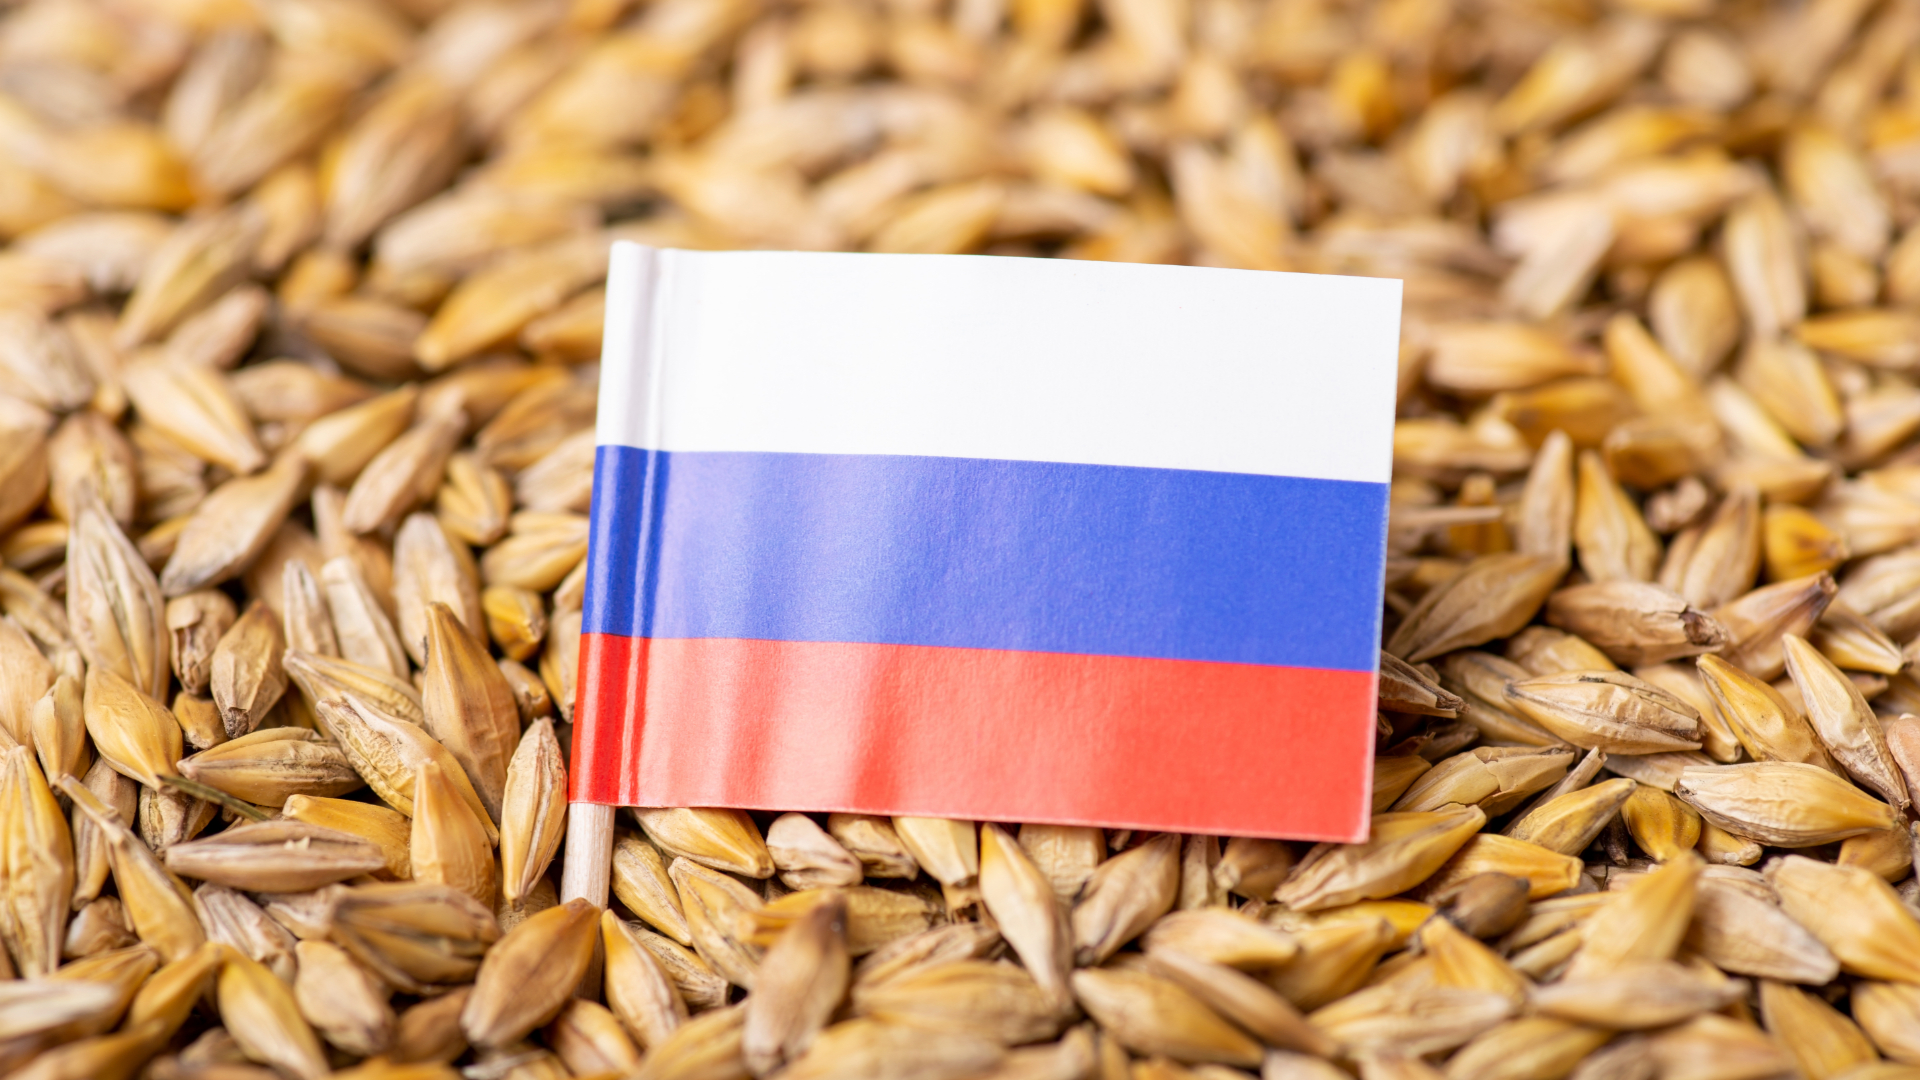 Кыргызстан нарастил импорт российской пшеницы до 97%